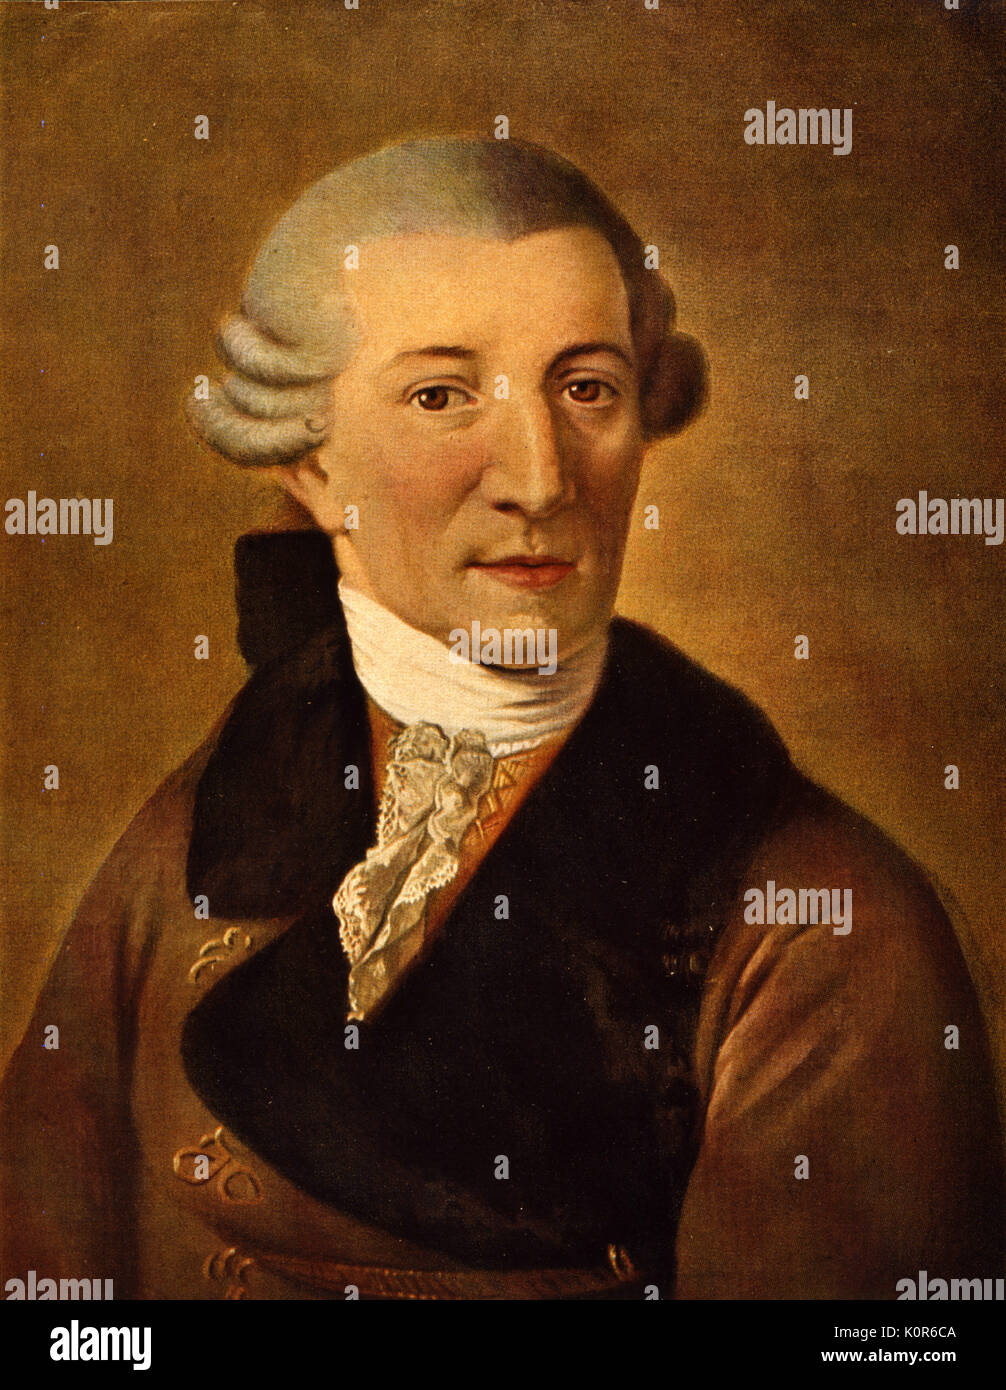 Franz Joseph Haydn - Porträt von Christian Ludwig Seehas. Österreichischen Komponisten, 31. März 1732 bis 31. Mai 1809 Stockfoto